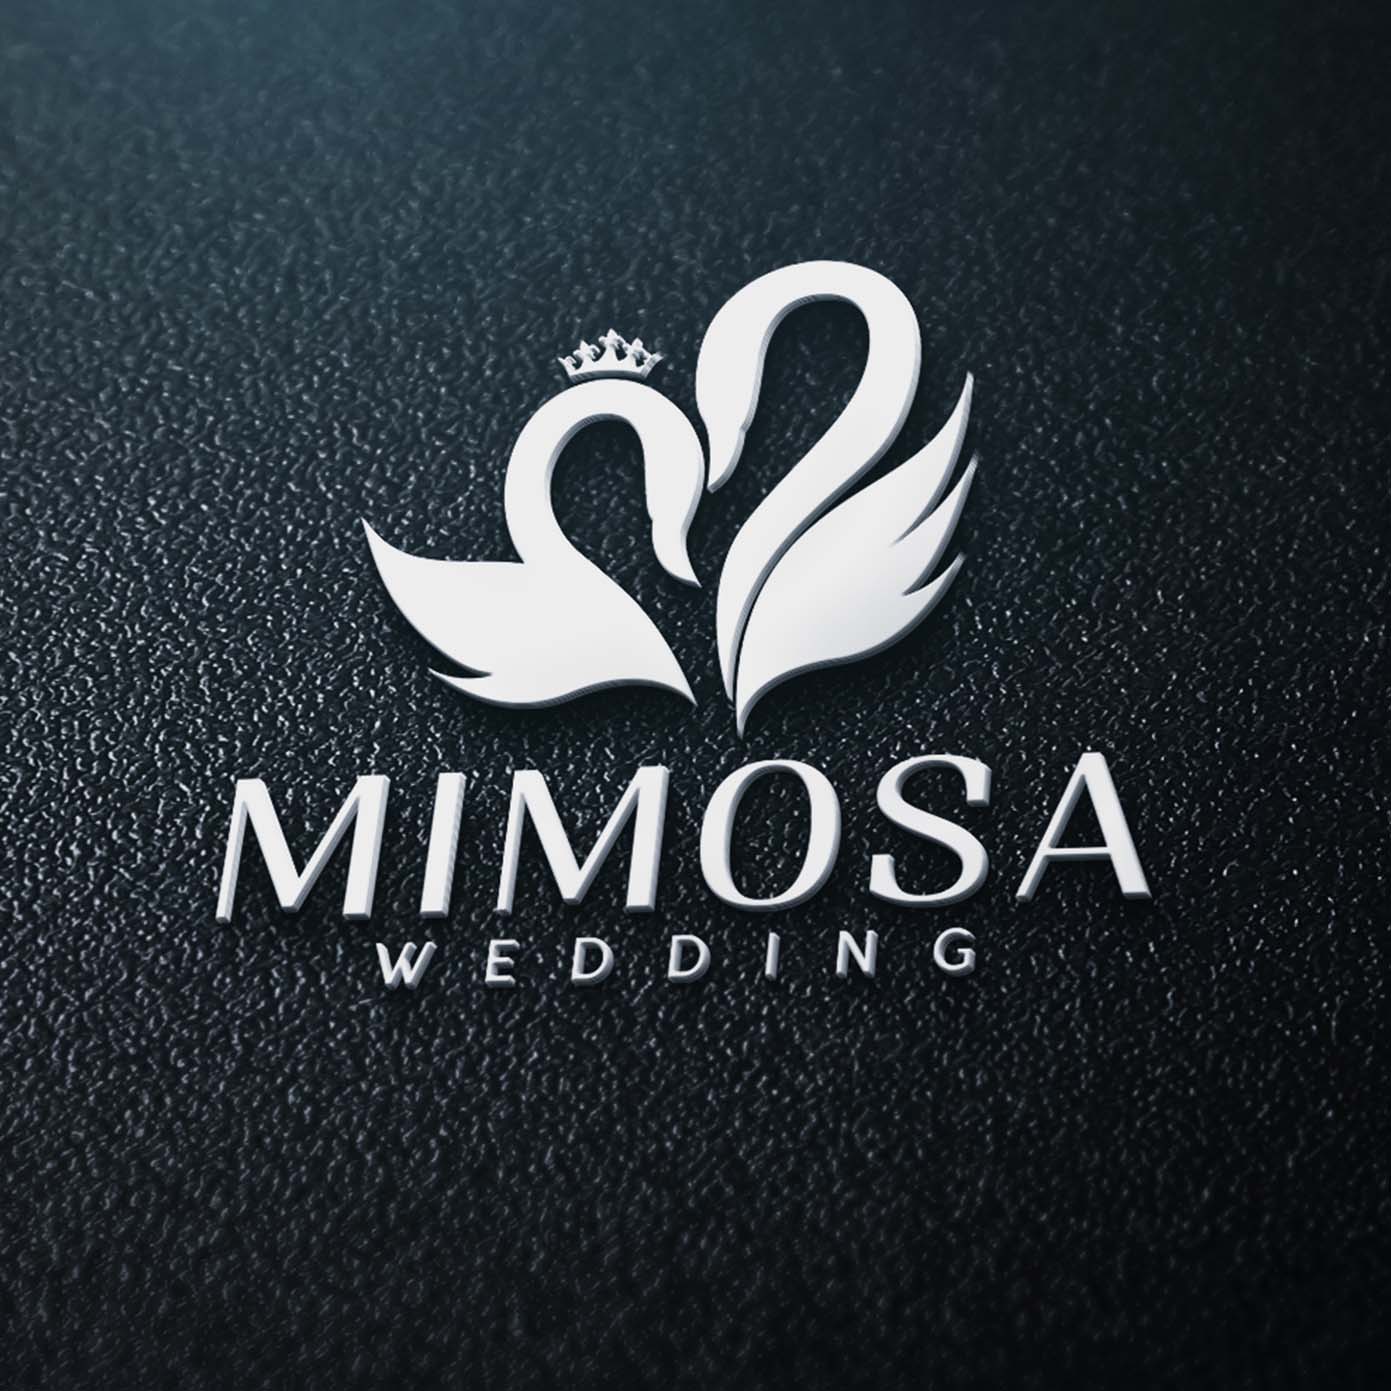 Mimosa Wedding - Ảnh viện áo cưới có dịch vụ tốt nhất Hà Nội